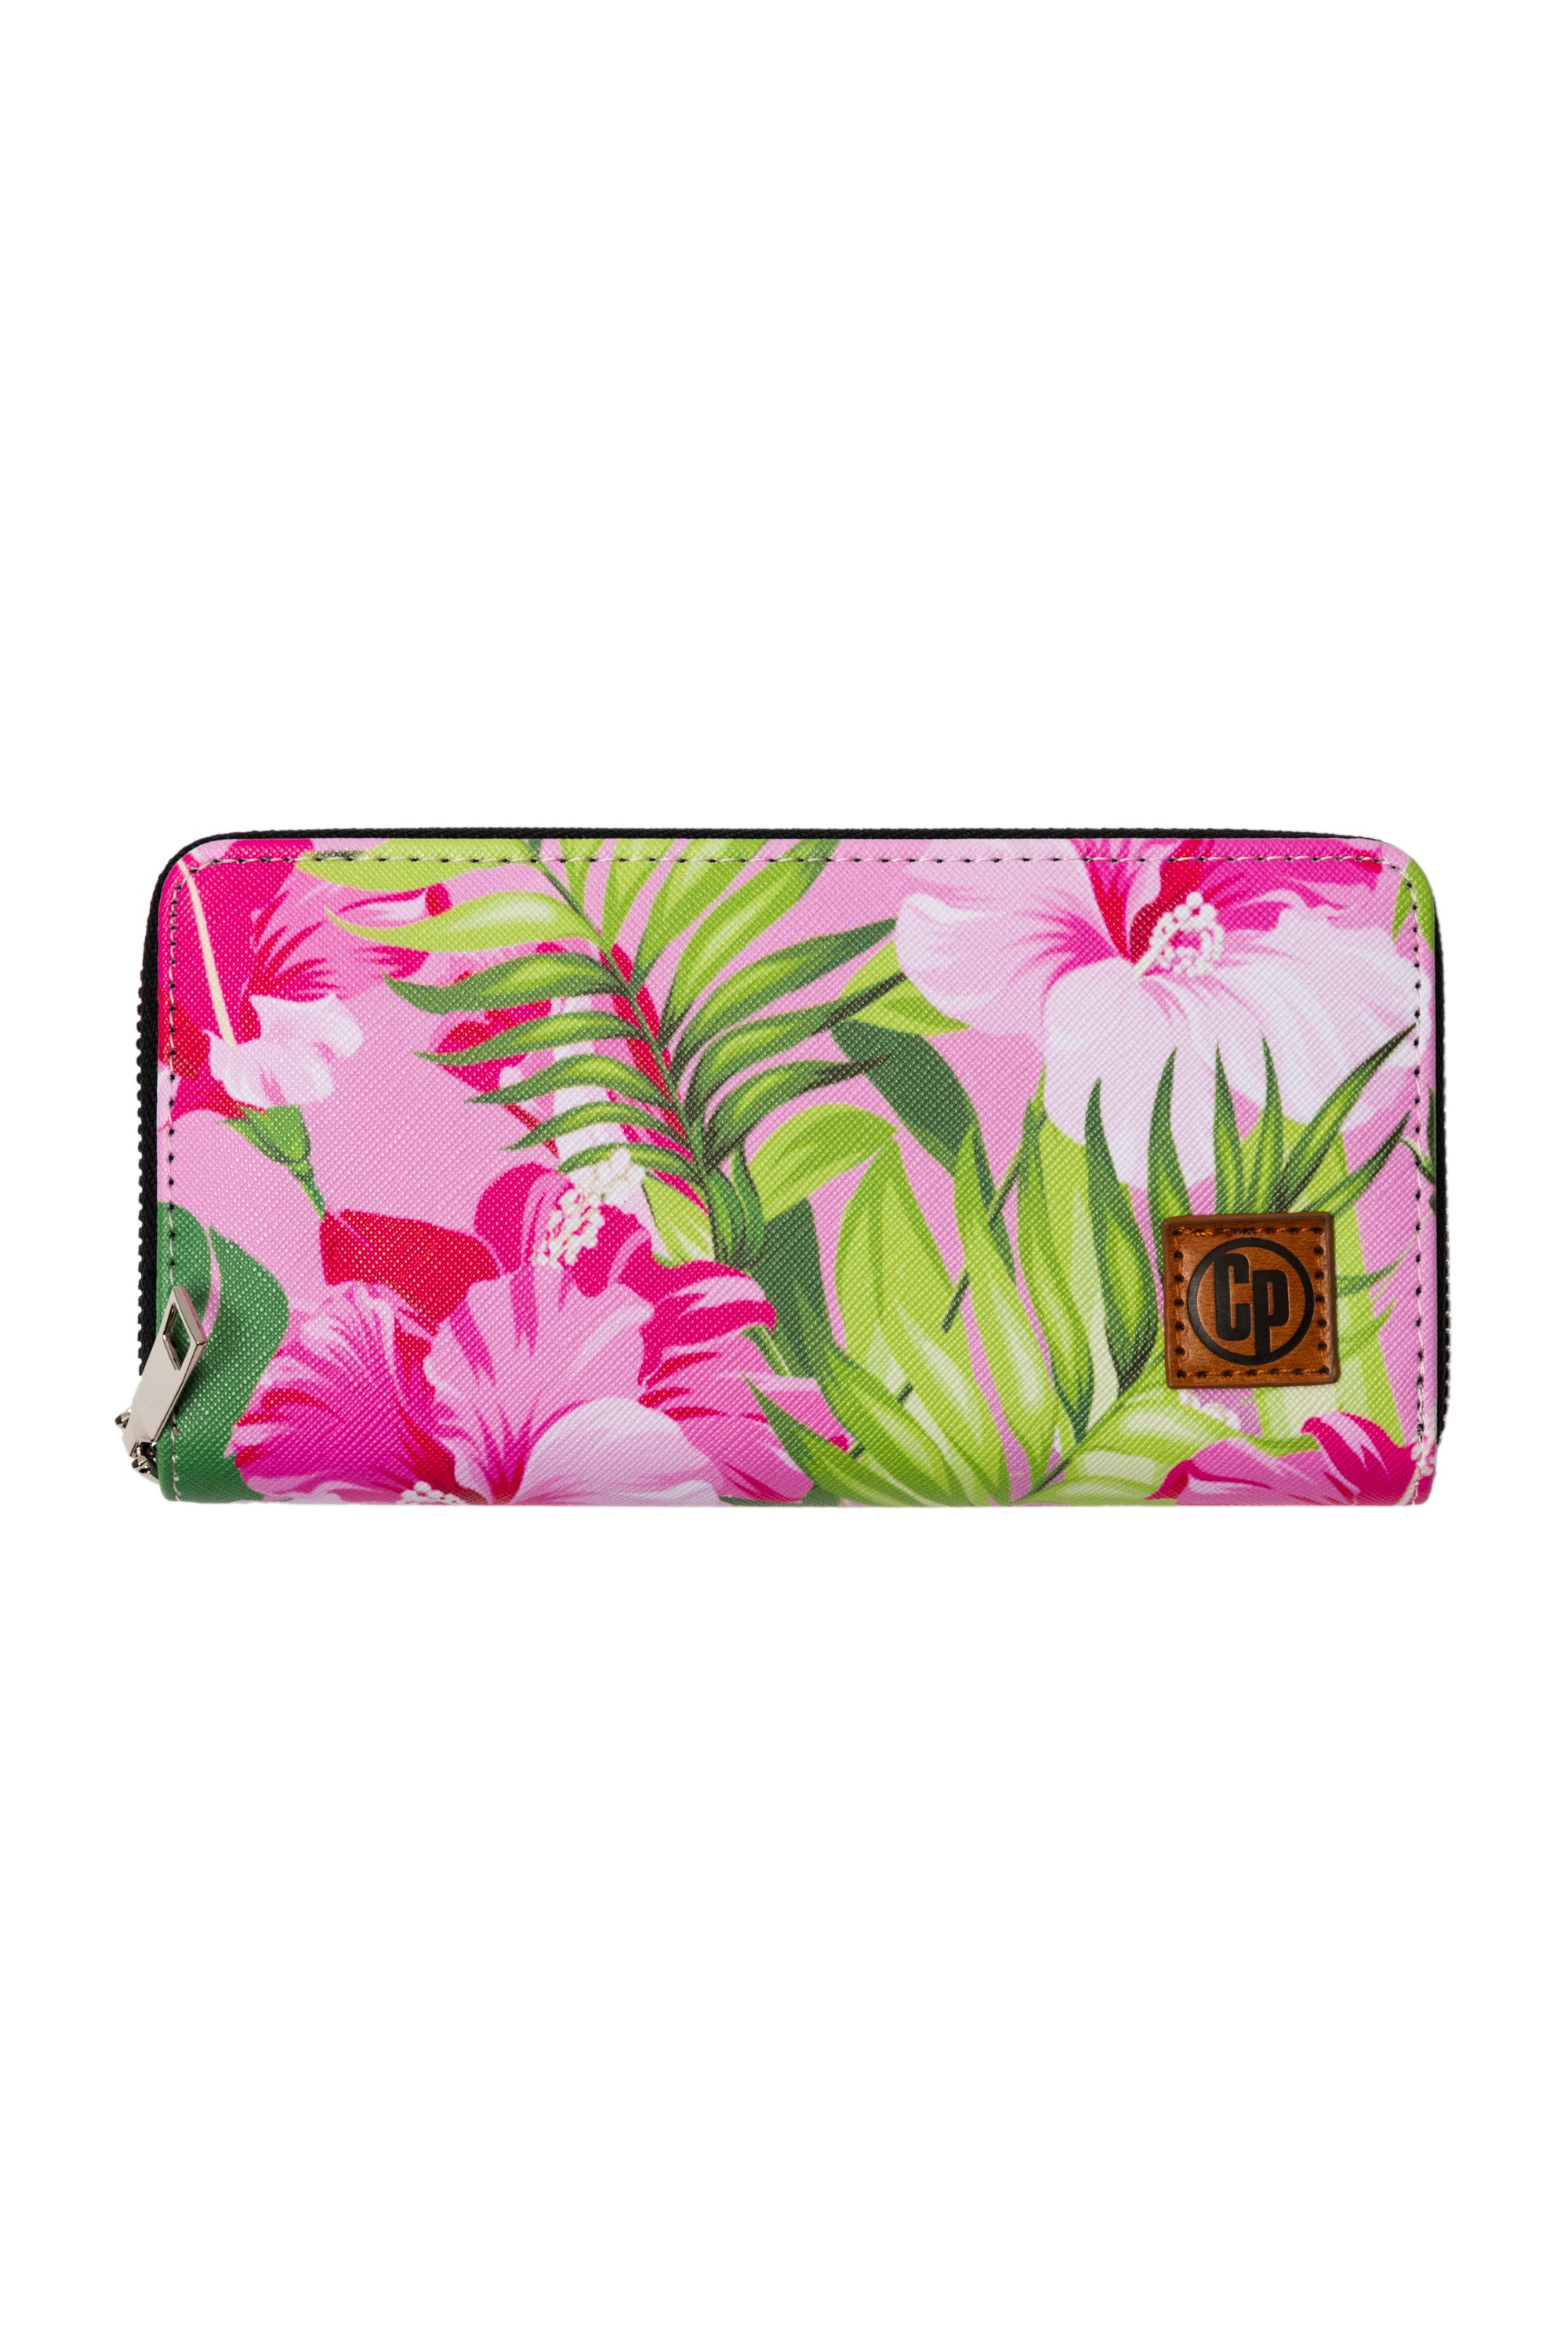 Women's Wallet - Pink Hibiscus